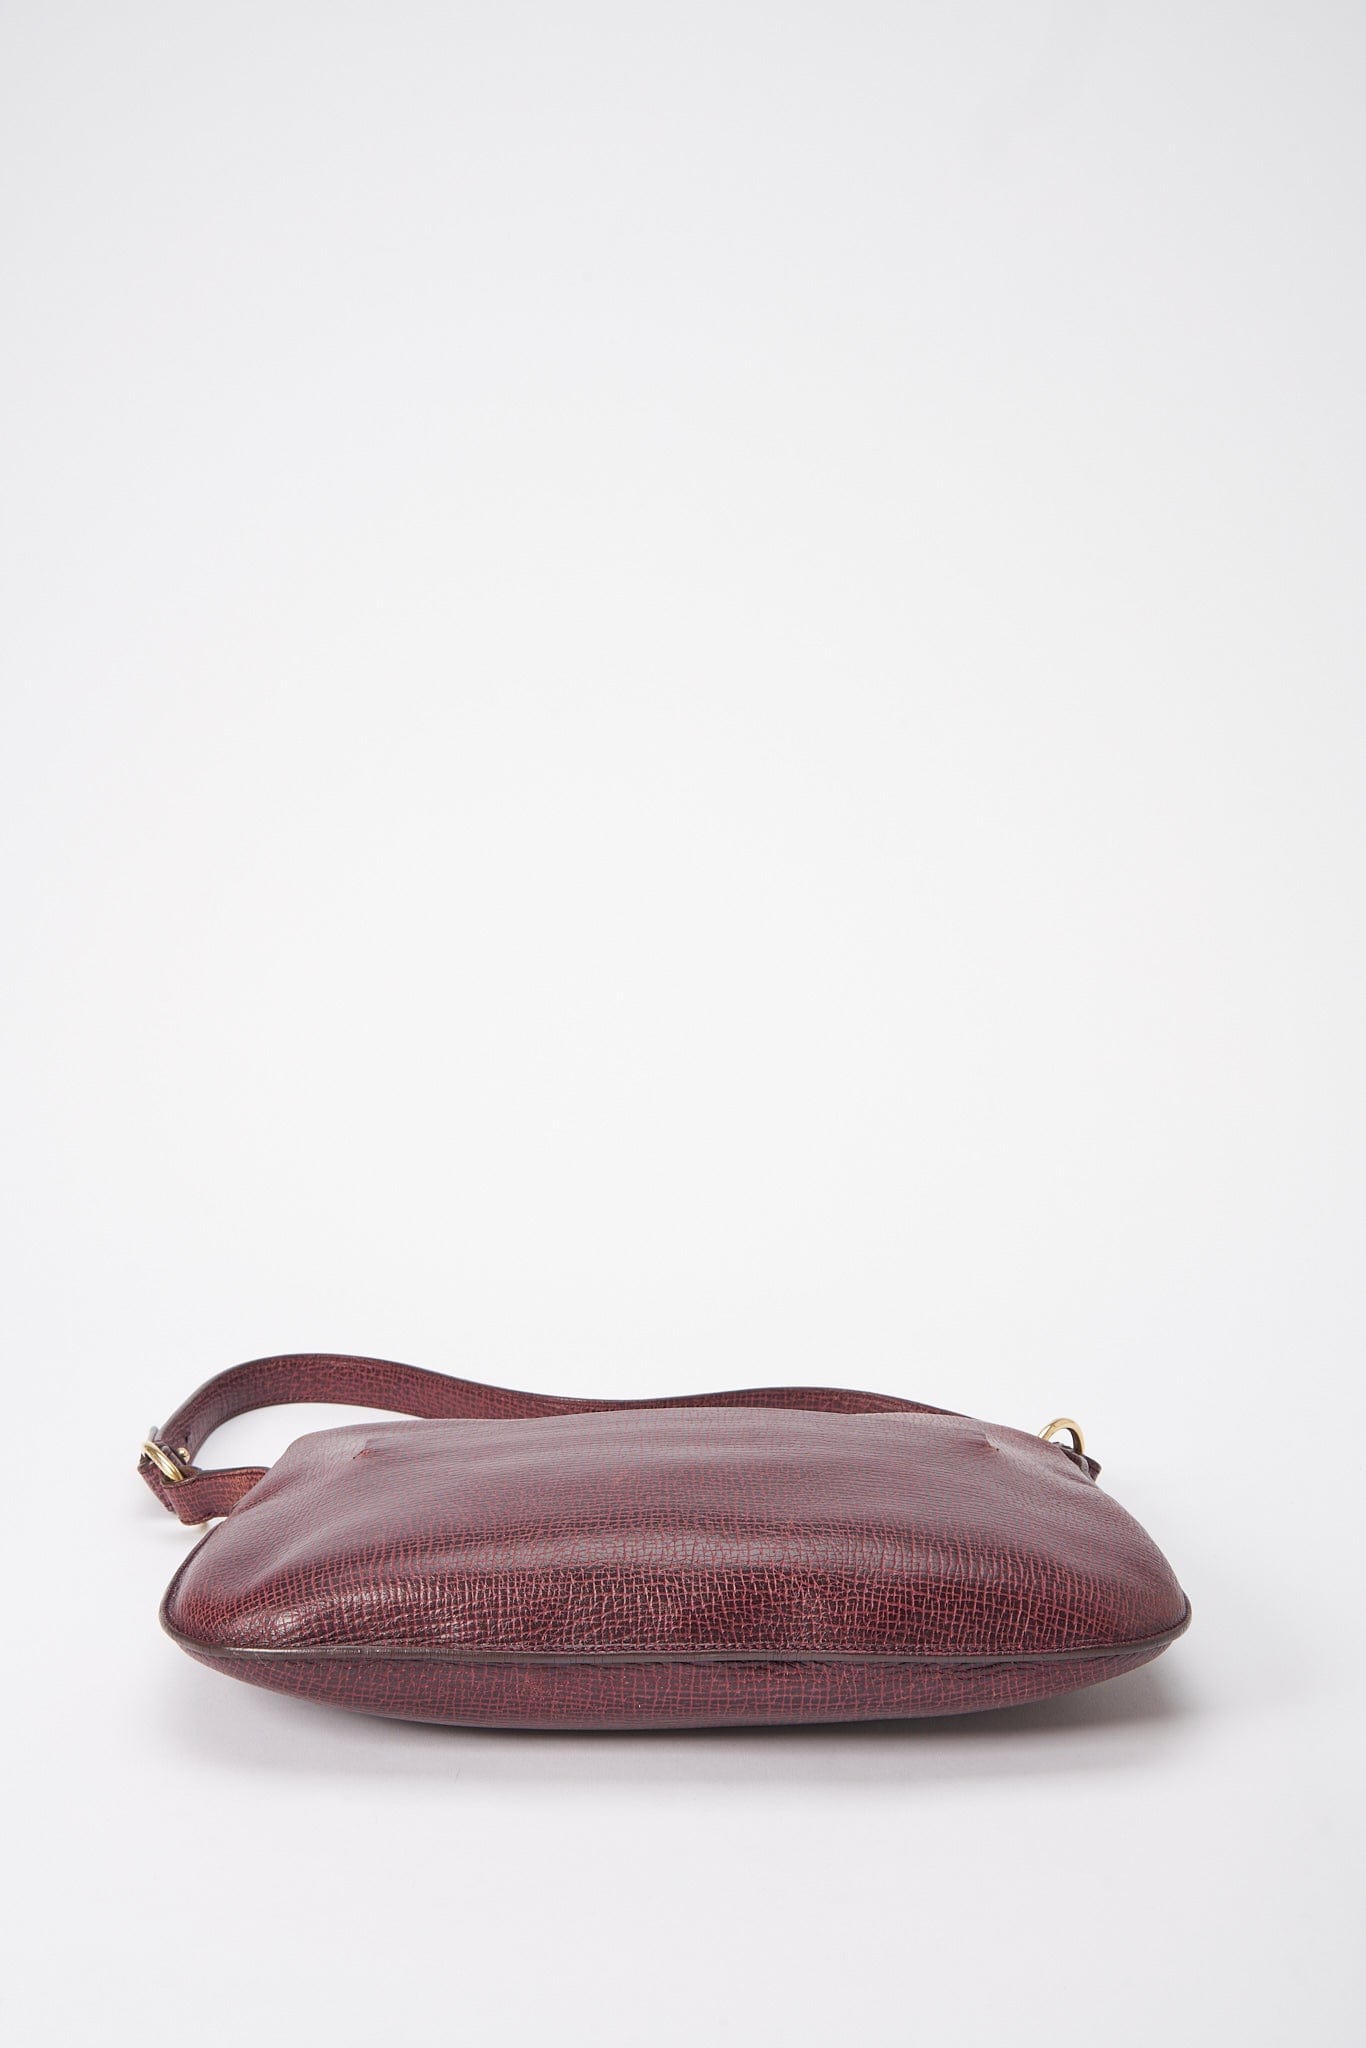 Vintage Loewe Shoulder Bag - Burgundy – The Hosta